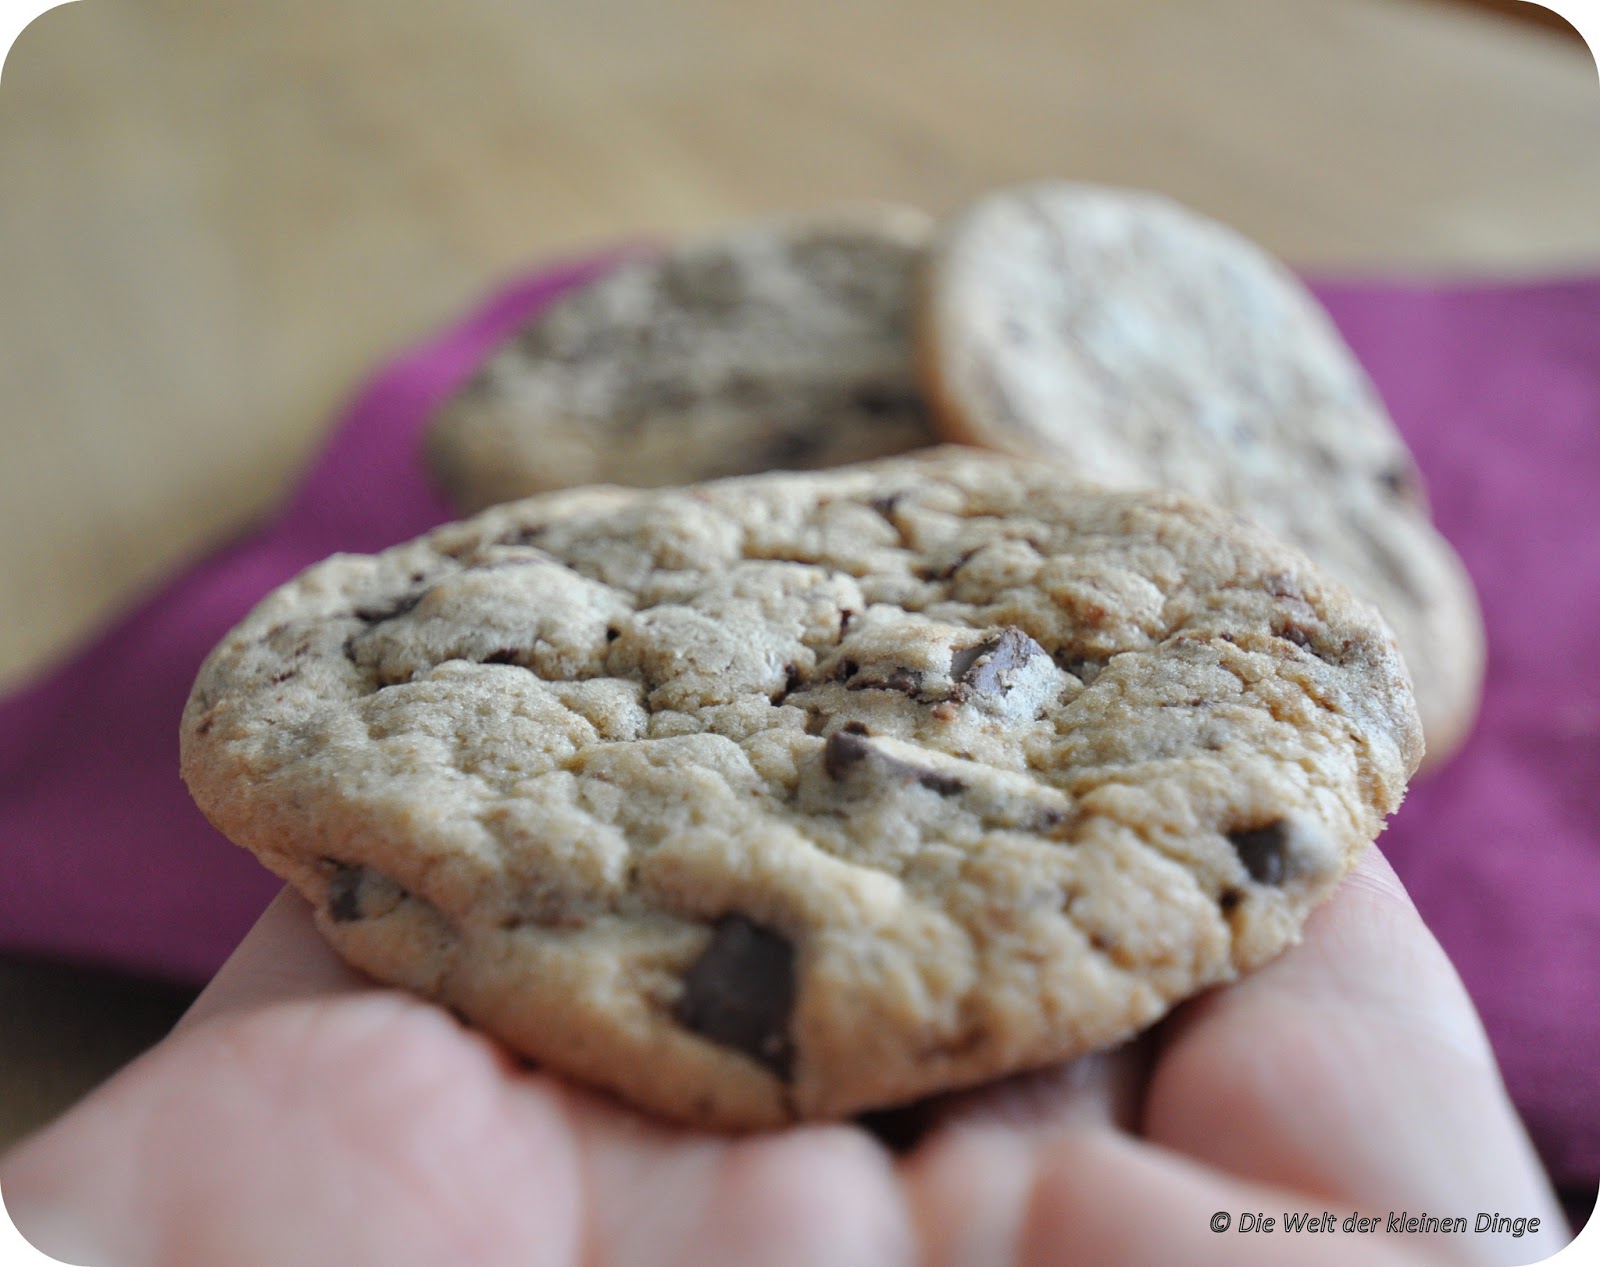 Die Welt der kleinen Dinge: Chocolate Chip Cookies, dubiduu...